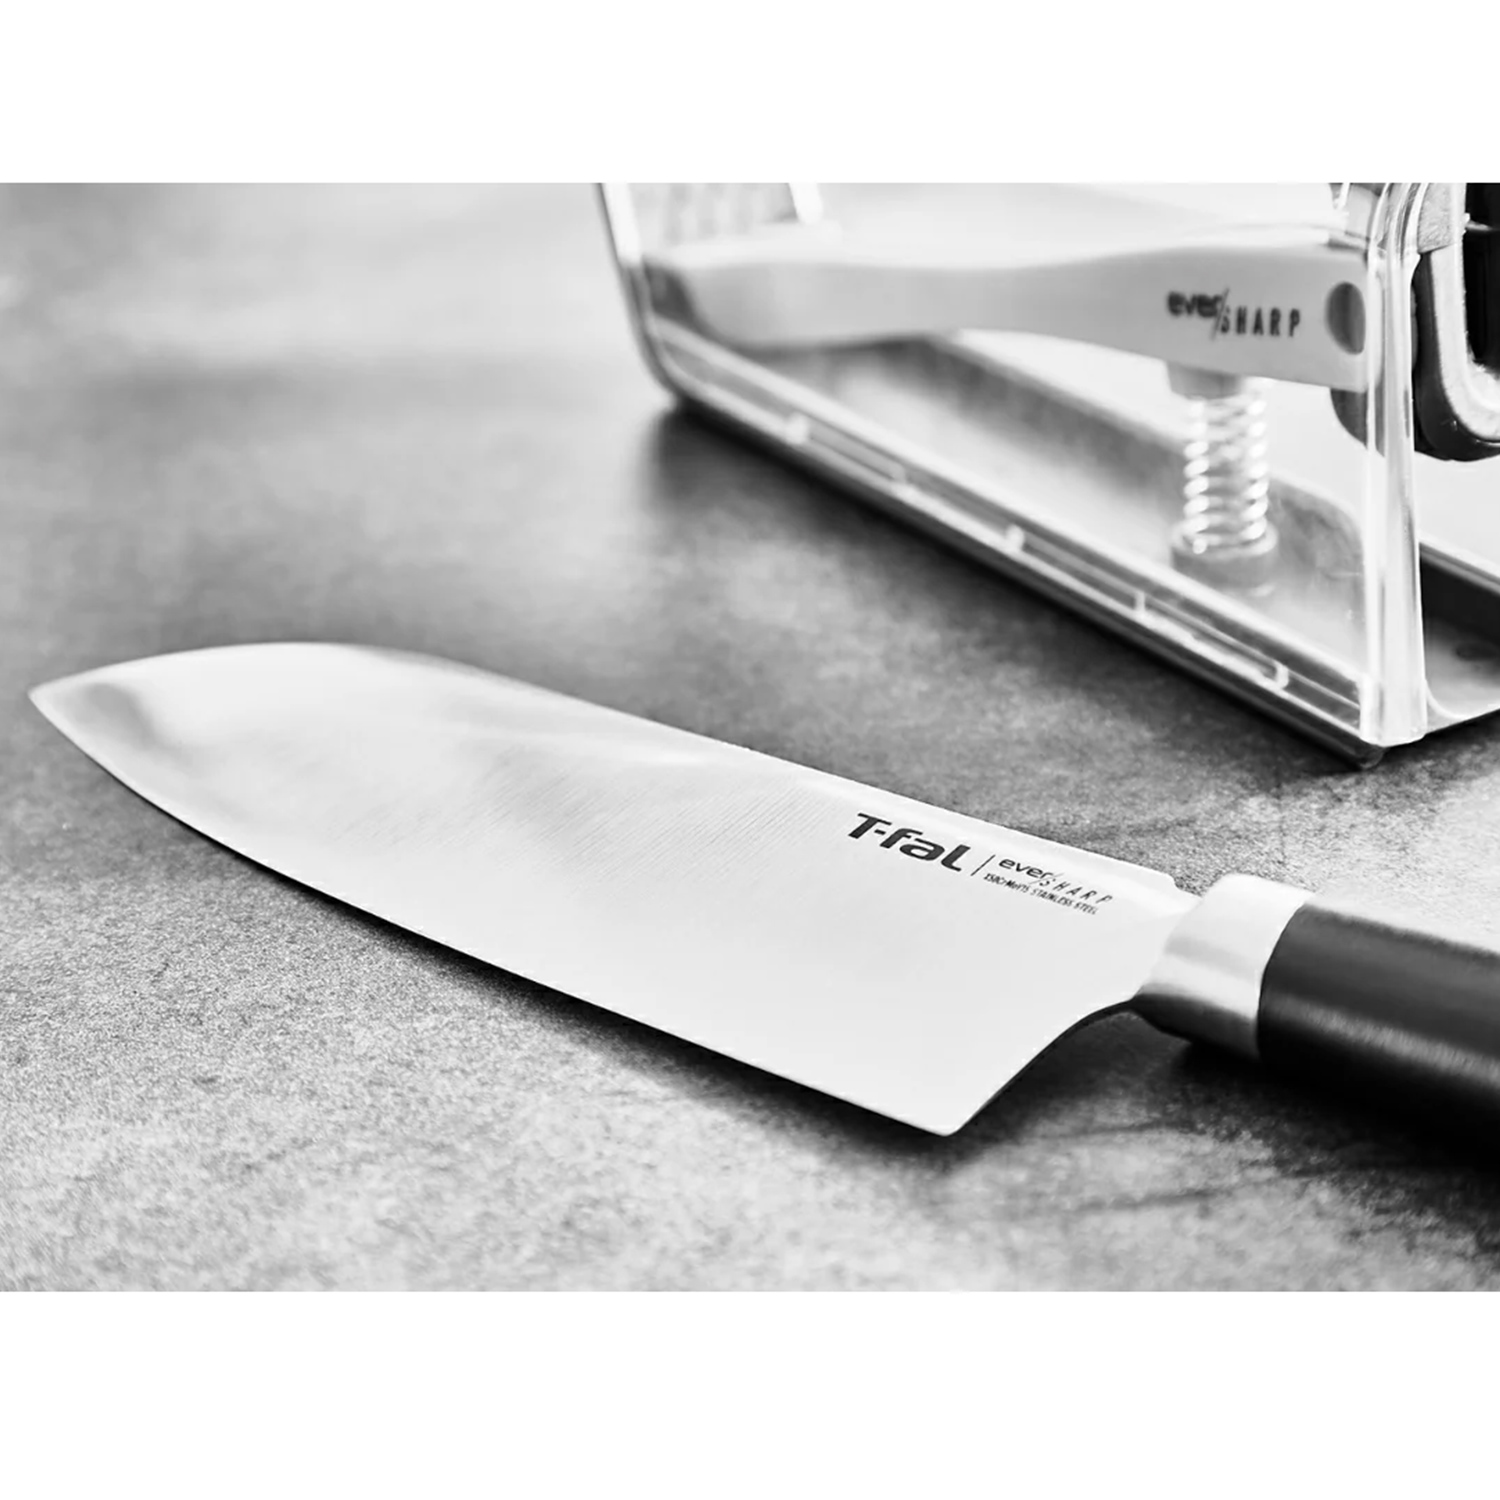 ティファール T-fal 包丁 エバーシャープ 三徳ナイフ16.5cm